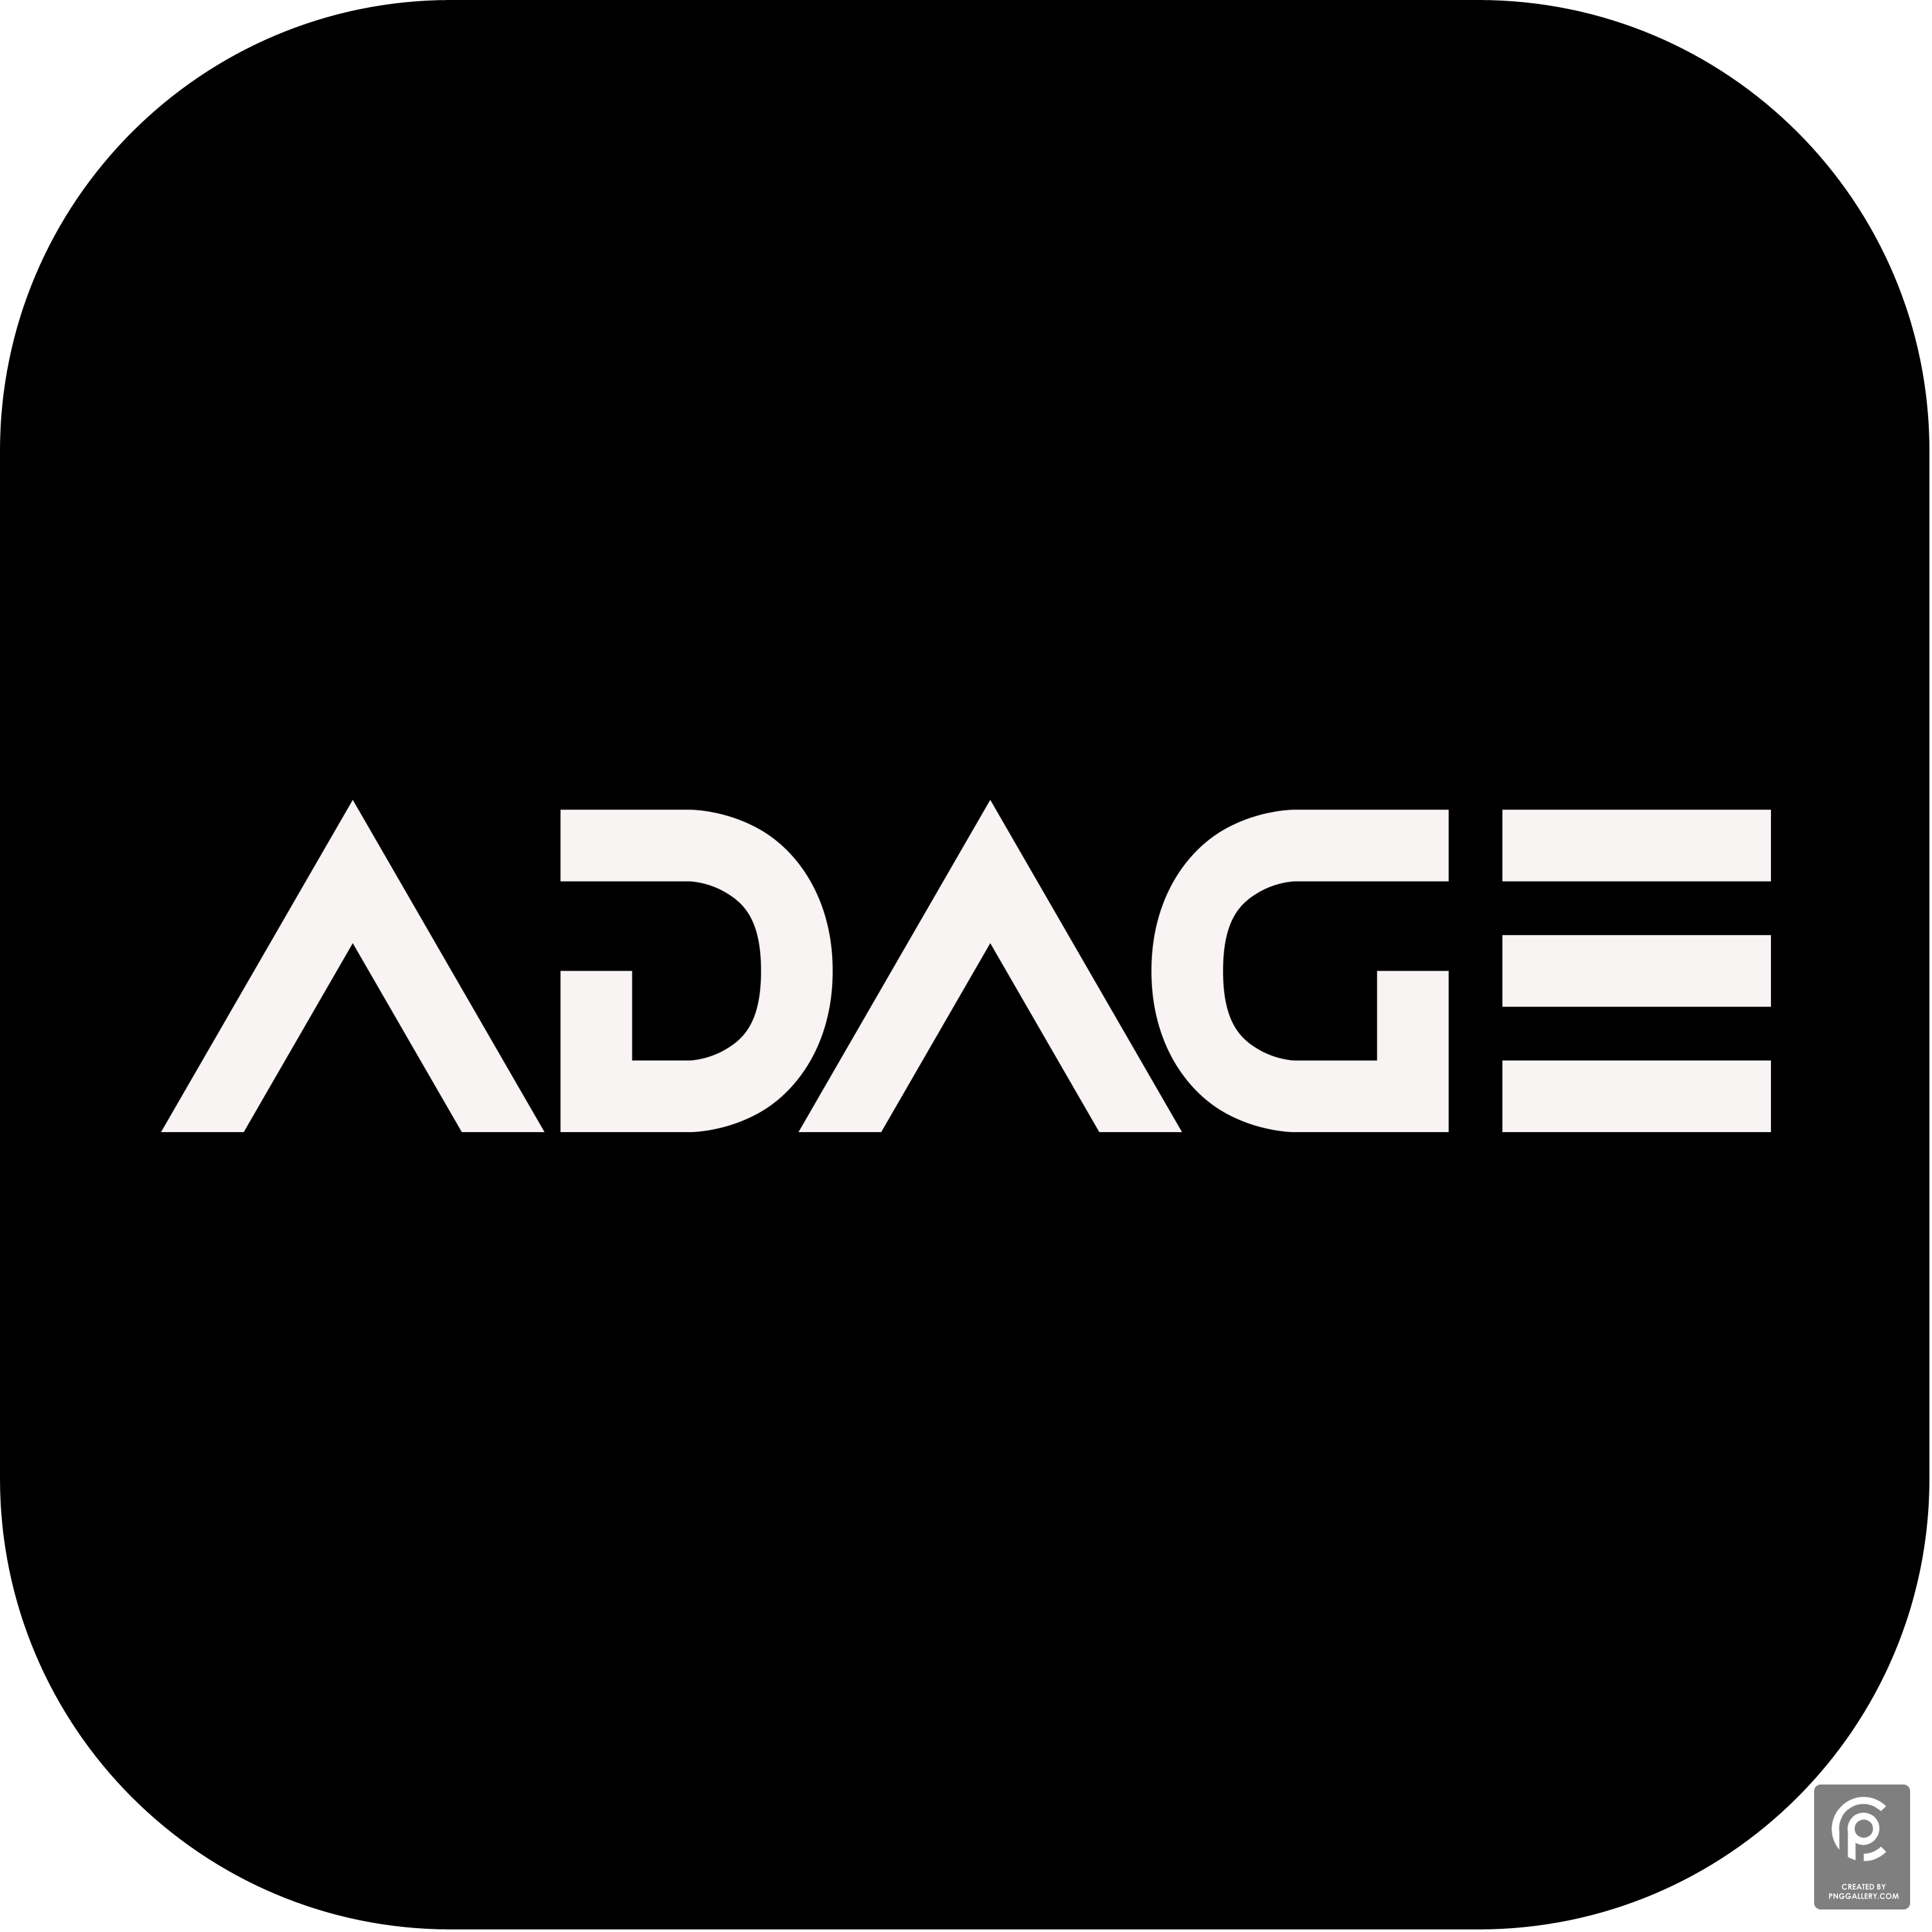 Adage Inc Logo Transparent Gallery